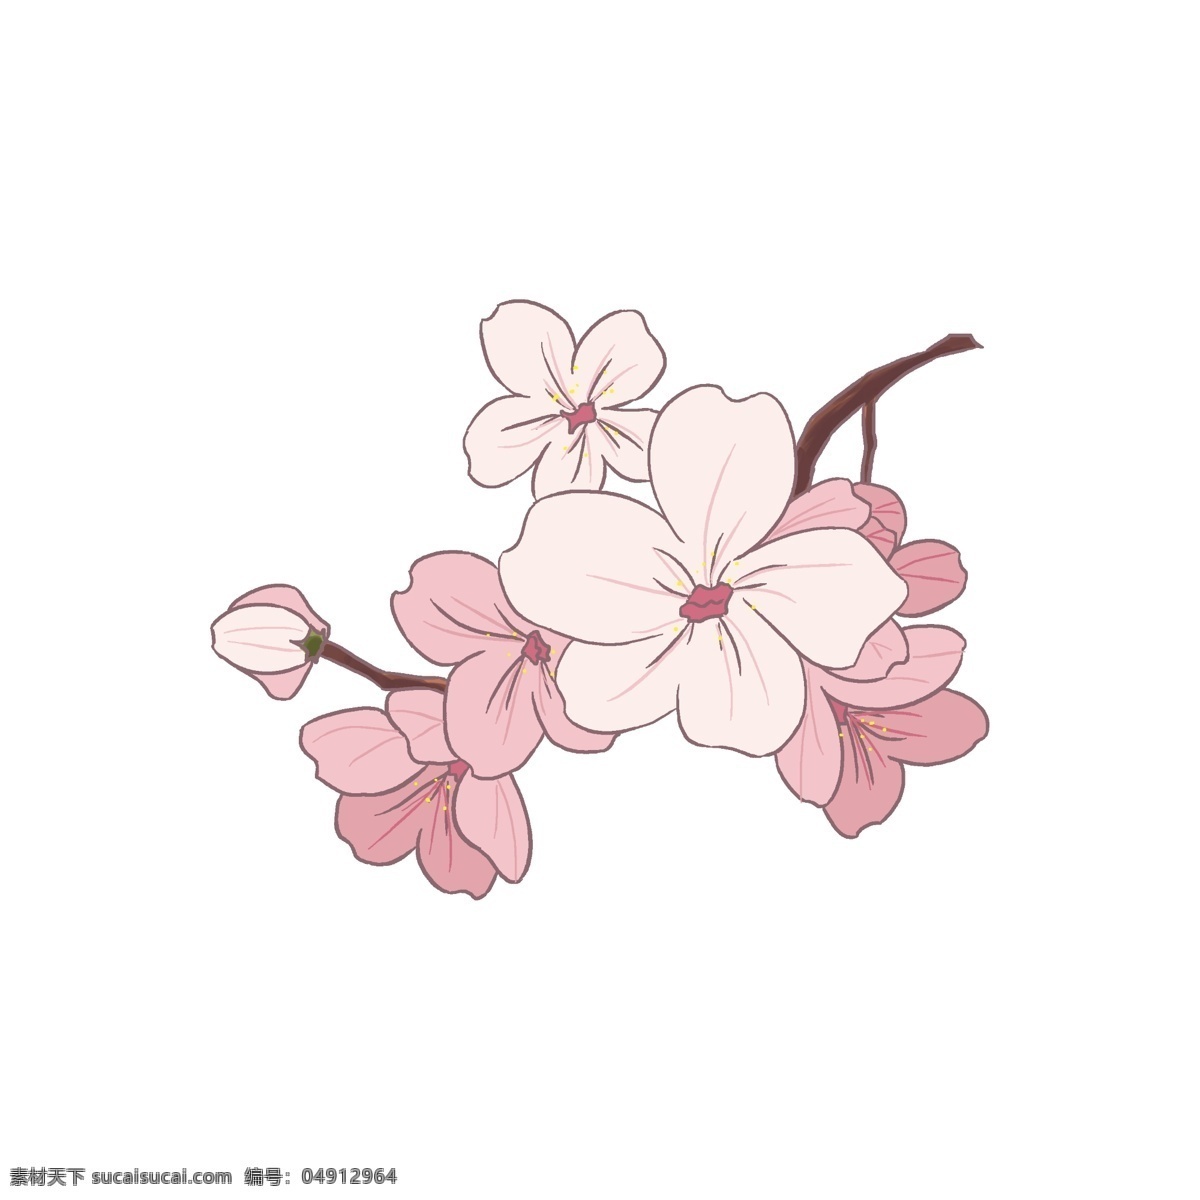 粉白色 春天 樱花 插画 粉白色的樱花 卡通插画 樱花插画 花朵插画 鲜花插画 花卉插画 漂亮的樱花